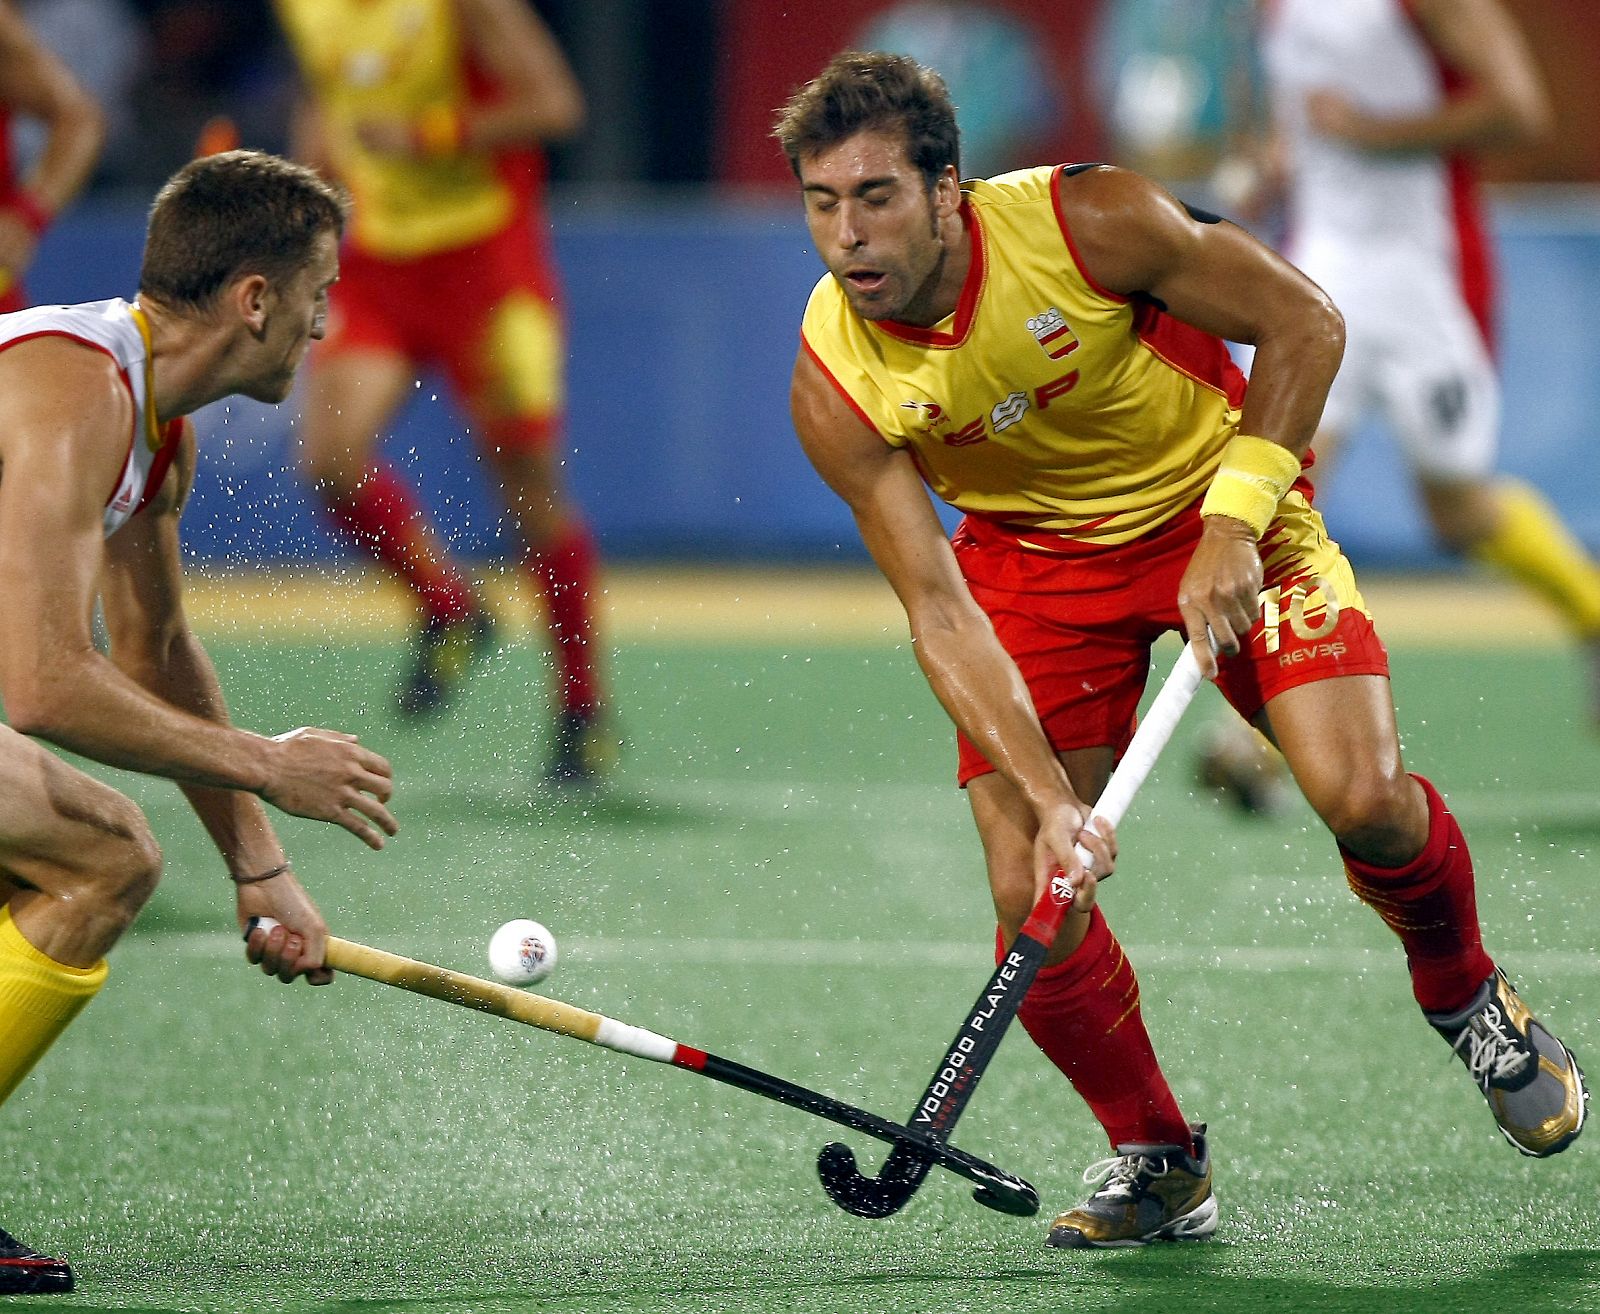 Eduard Tubau disputa una bola ante un jugador del equipo de Belgica durante el encuentro correspondiete a la primera ronda de los XXIX Juegos Olímpicos de Pekin.